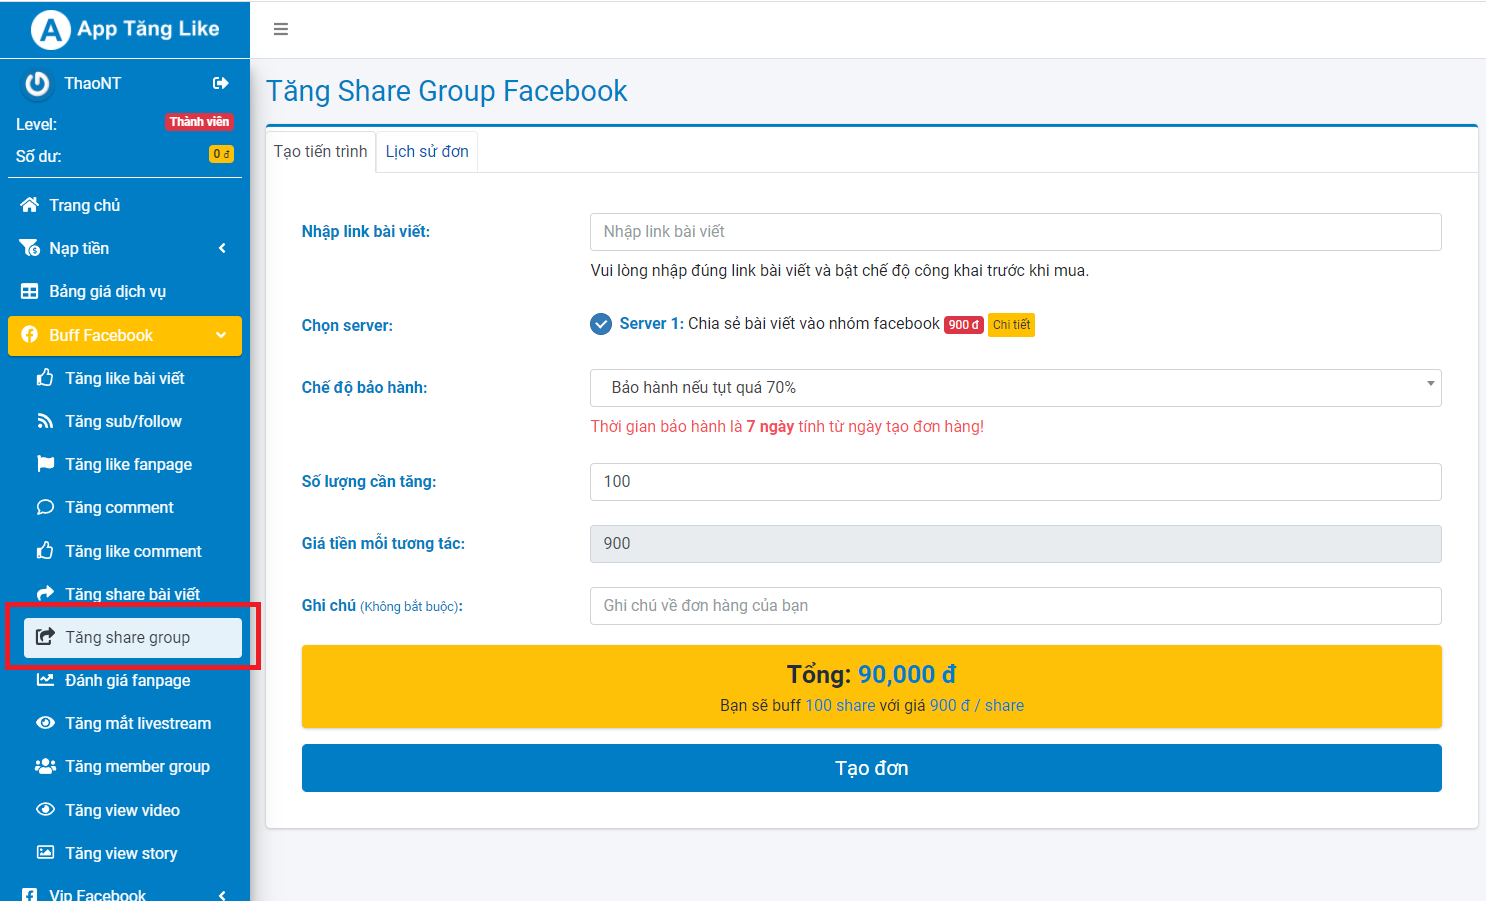 auto share group facebook tại apptanglike